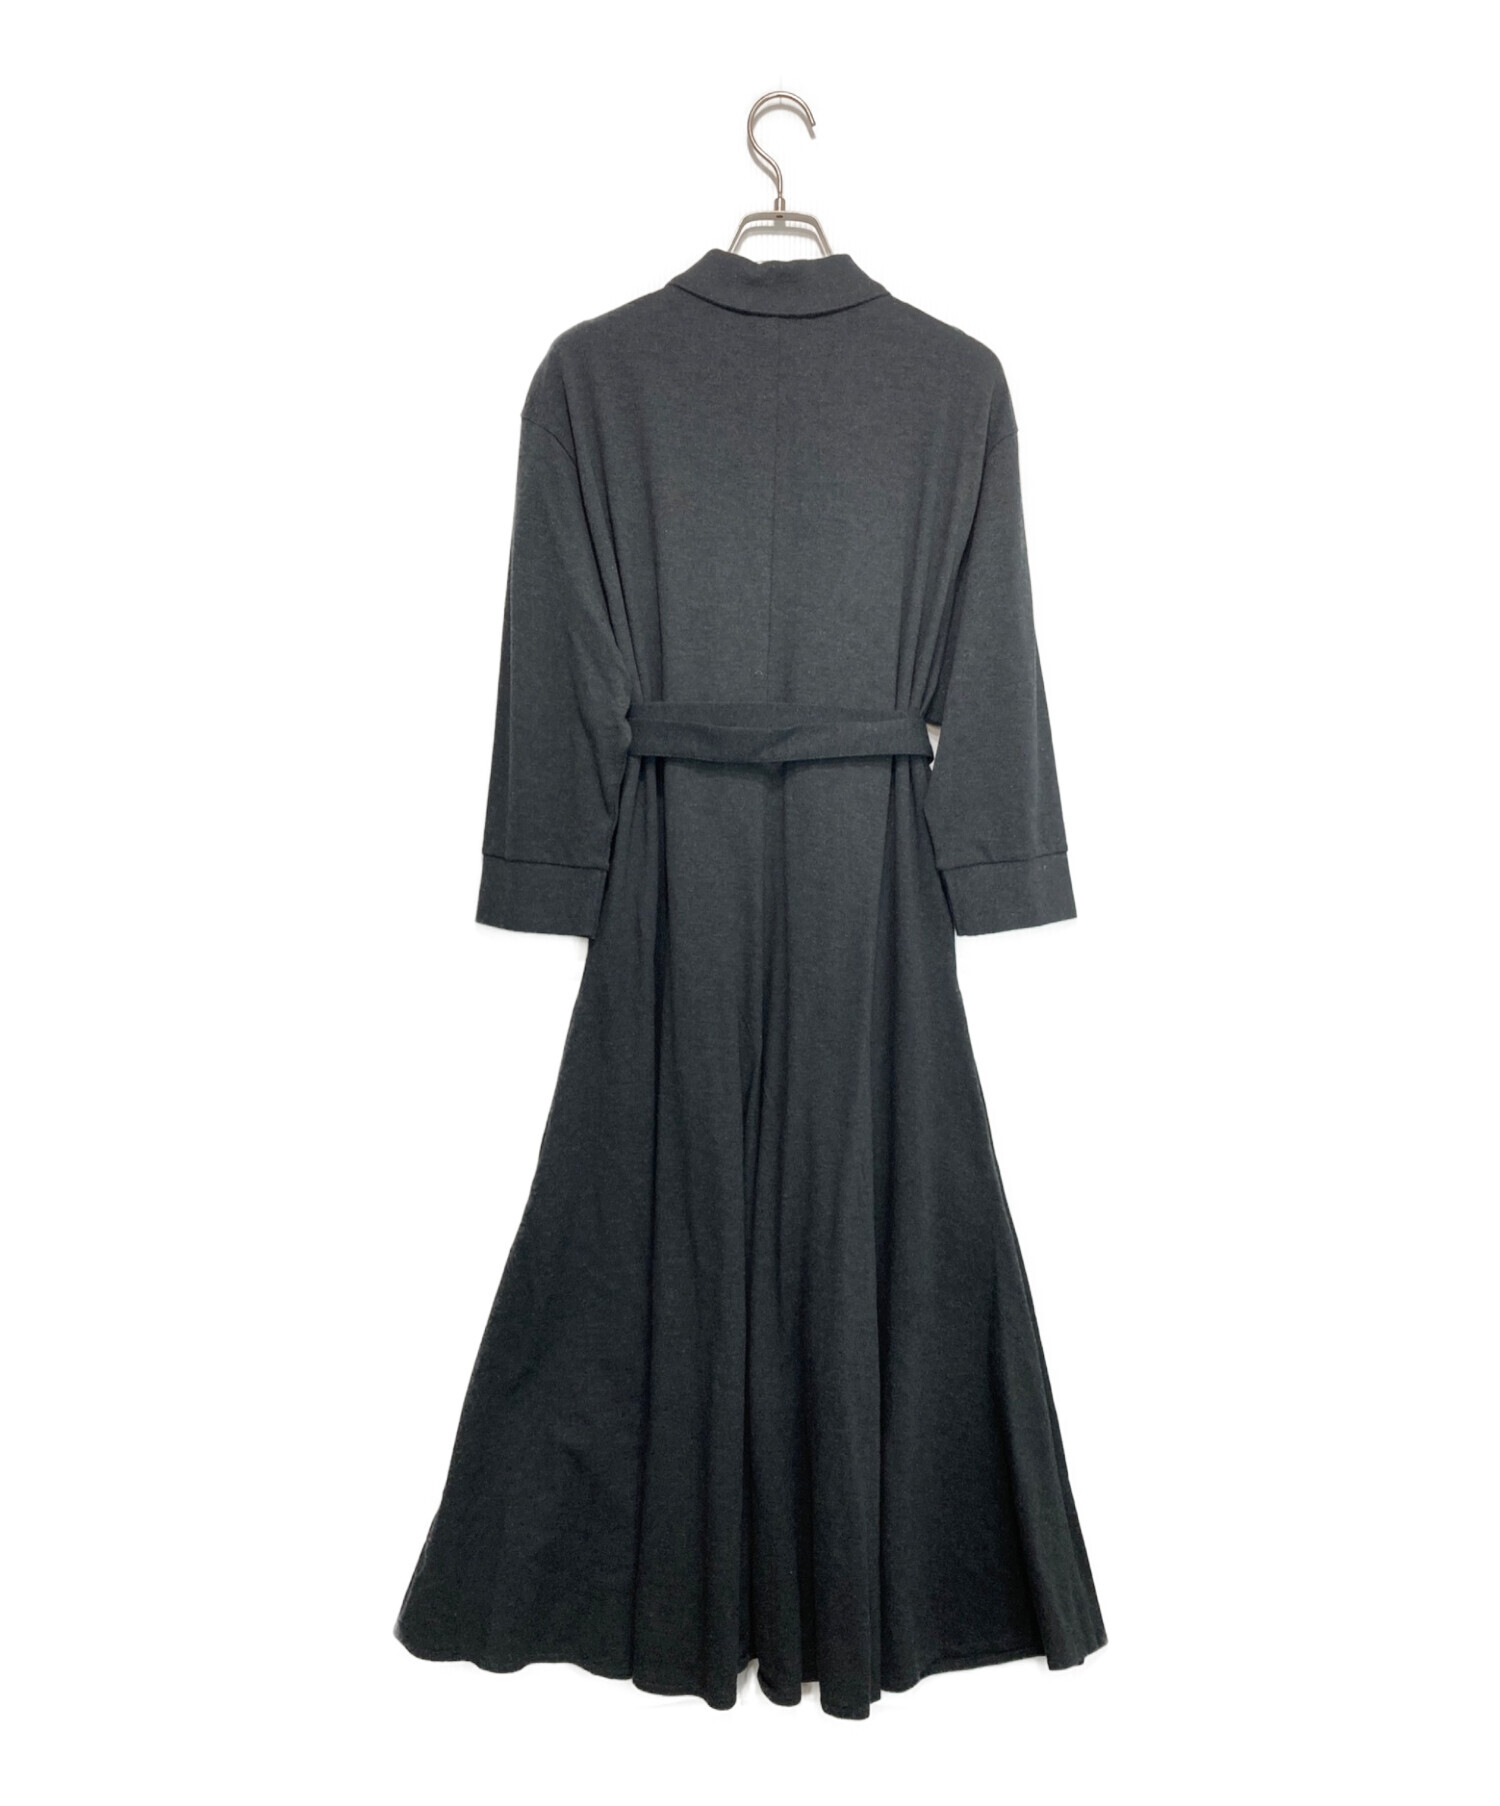 LACOSTE (ラコステ) ベルトデザインポロシャツドレス グレー サイズ:38 未使用品